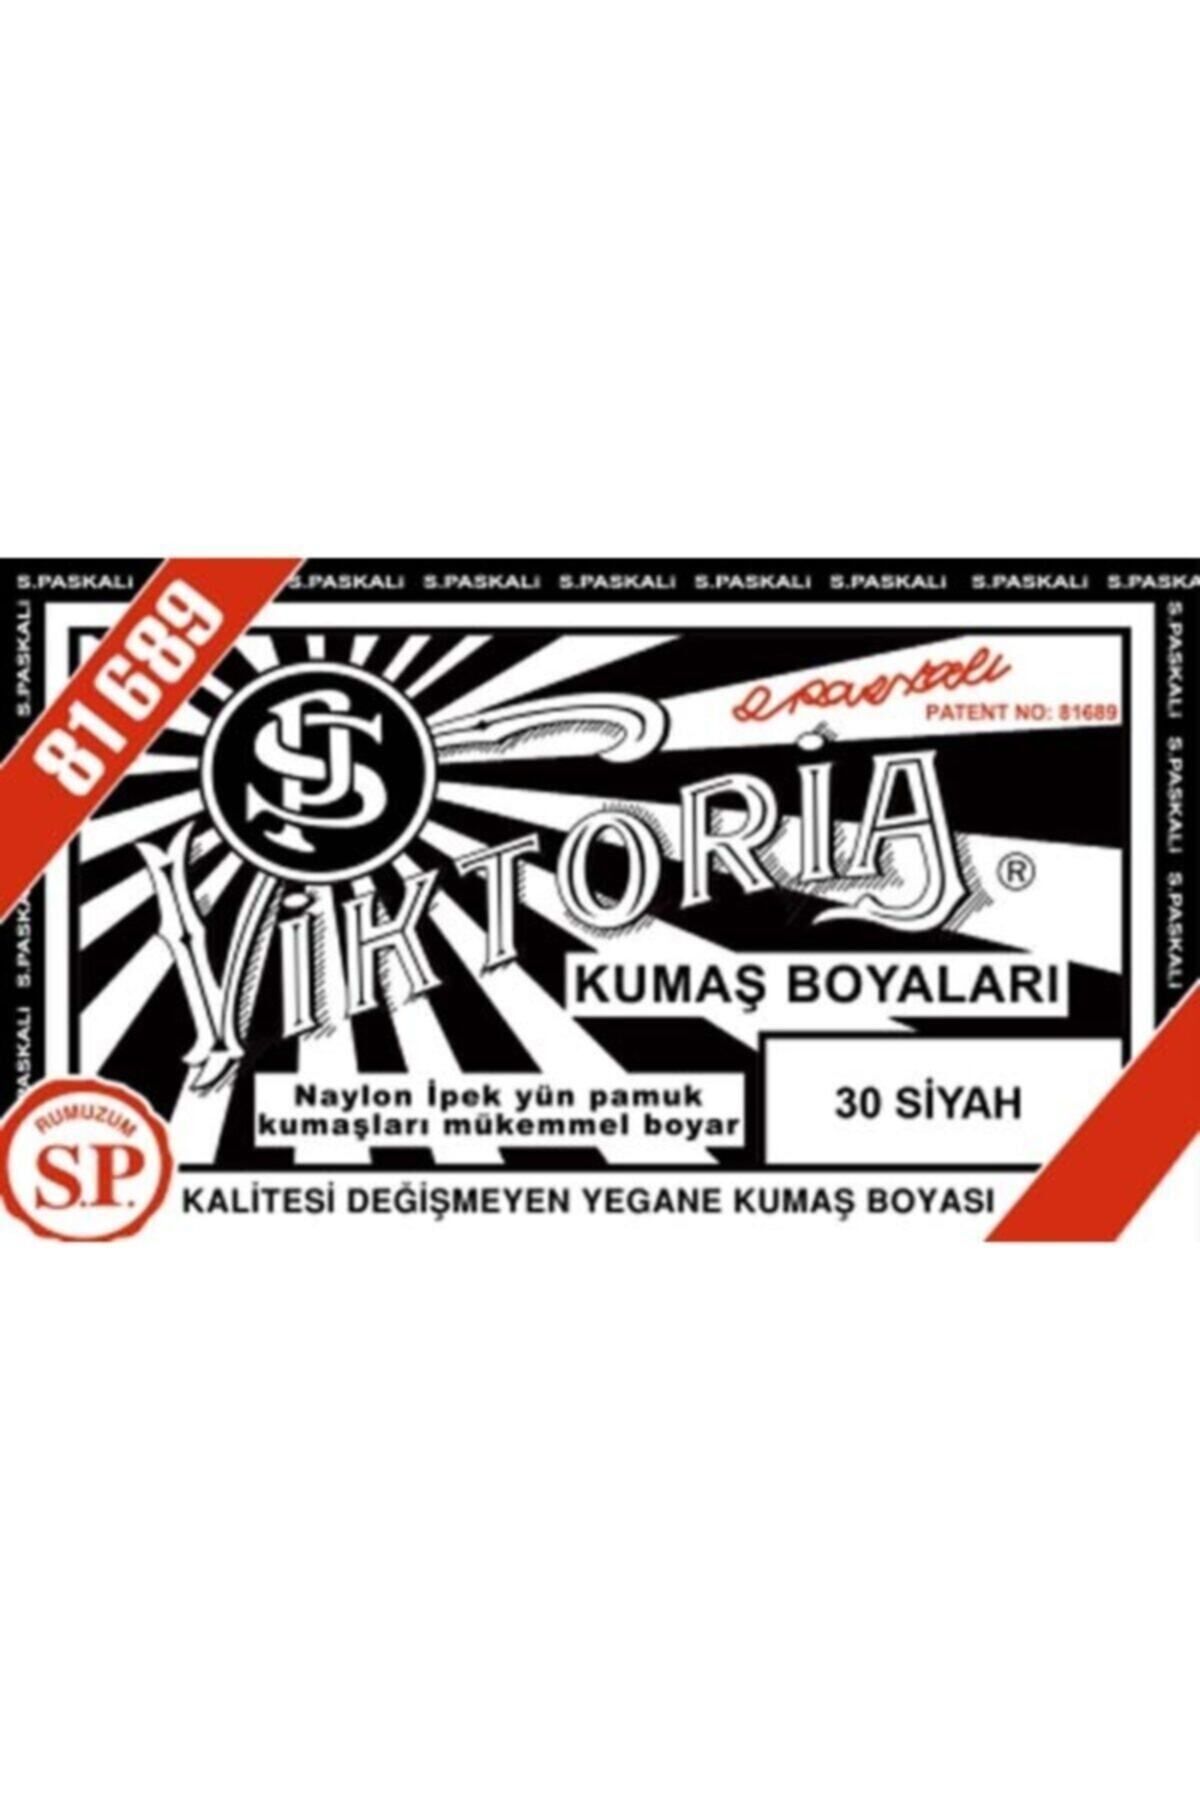 Viktoria Boya Kumaş Boyası Toz Siyah - 10-13 gr - 30 Siyah 81689